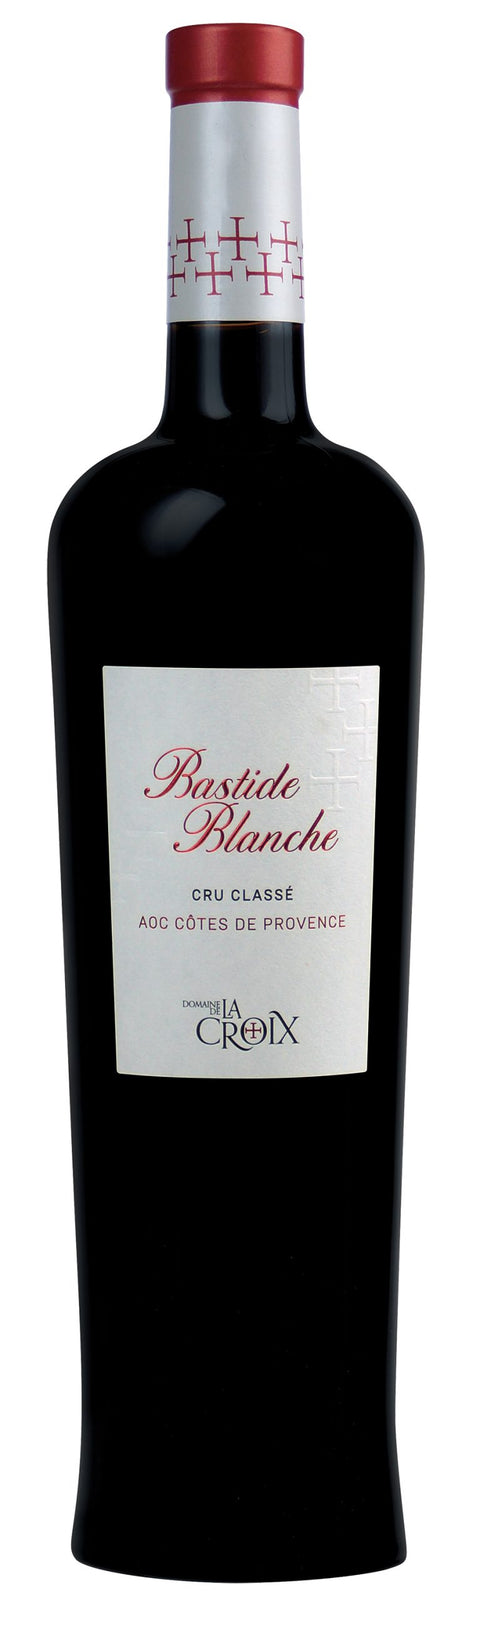 Bastide Blanche Rouge, Côtes de Provence Cru Classé 2018